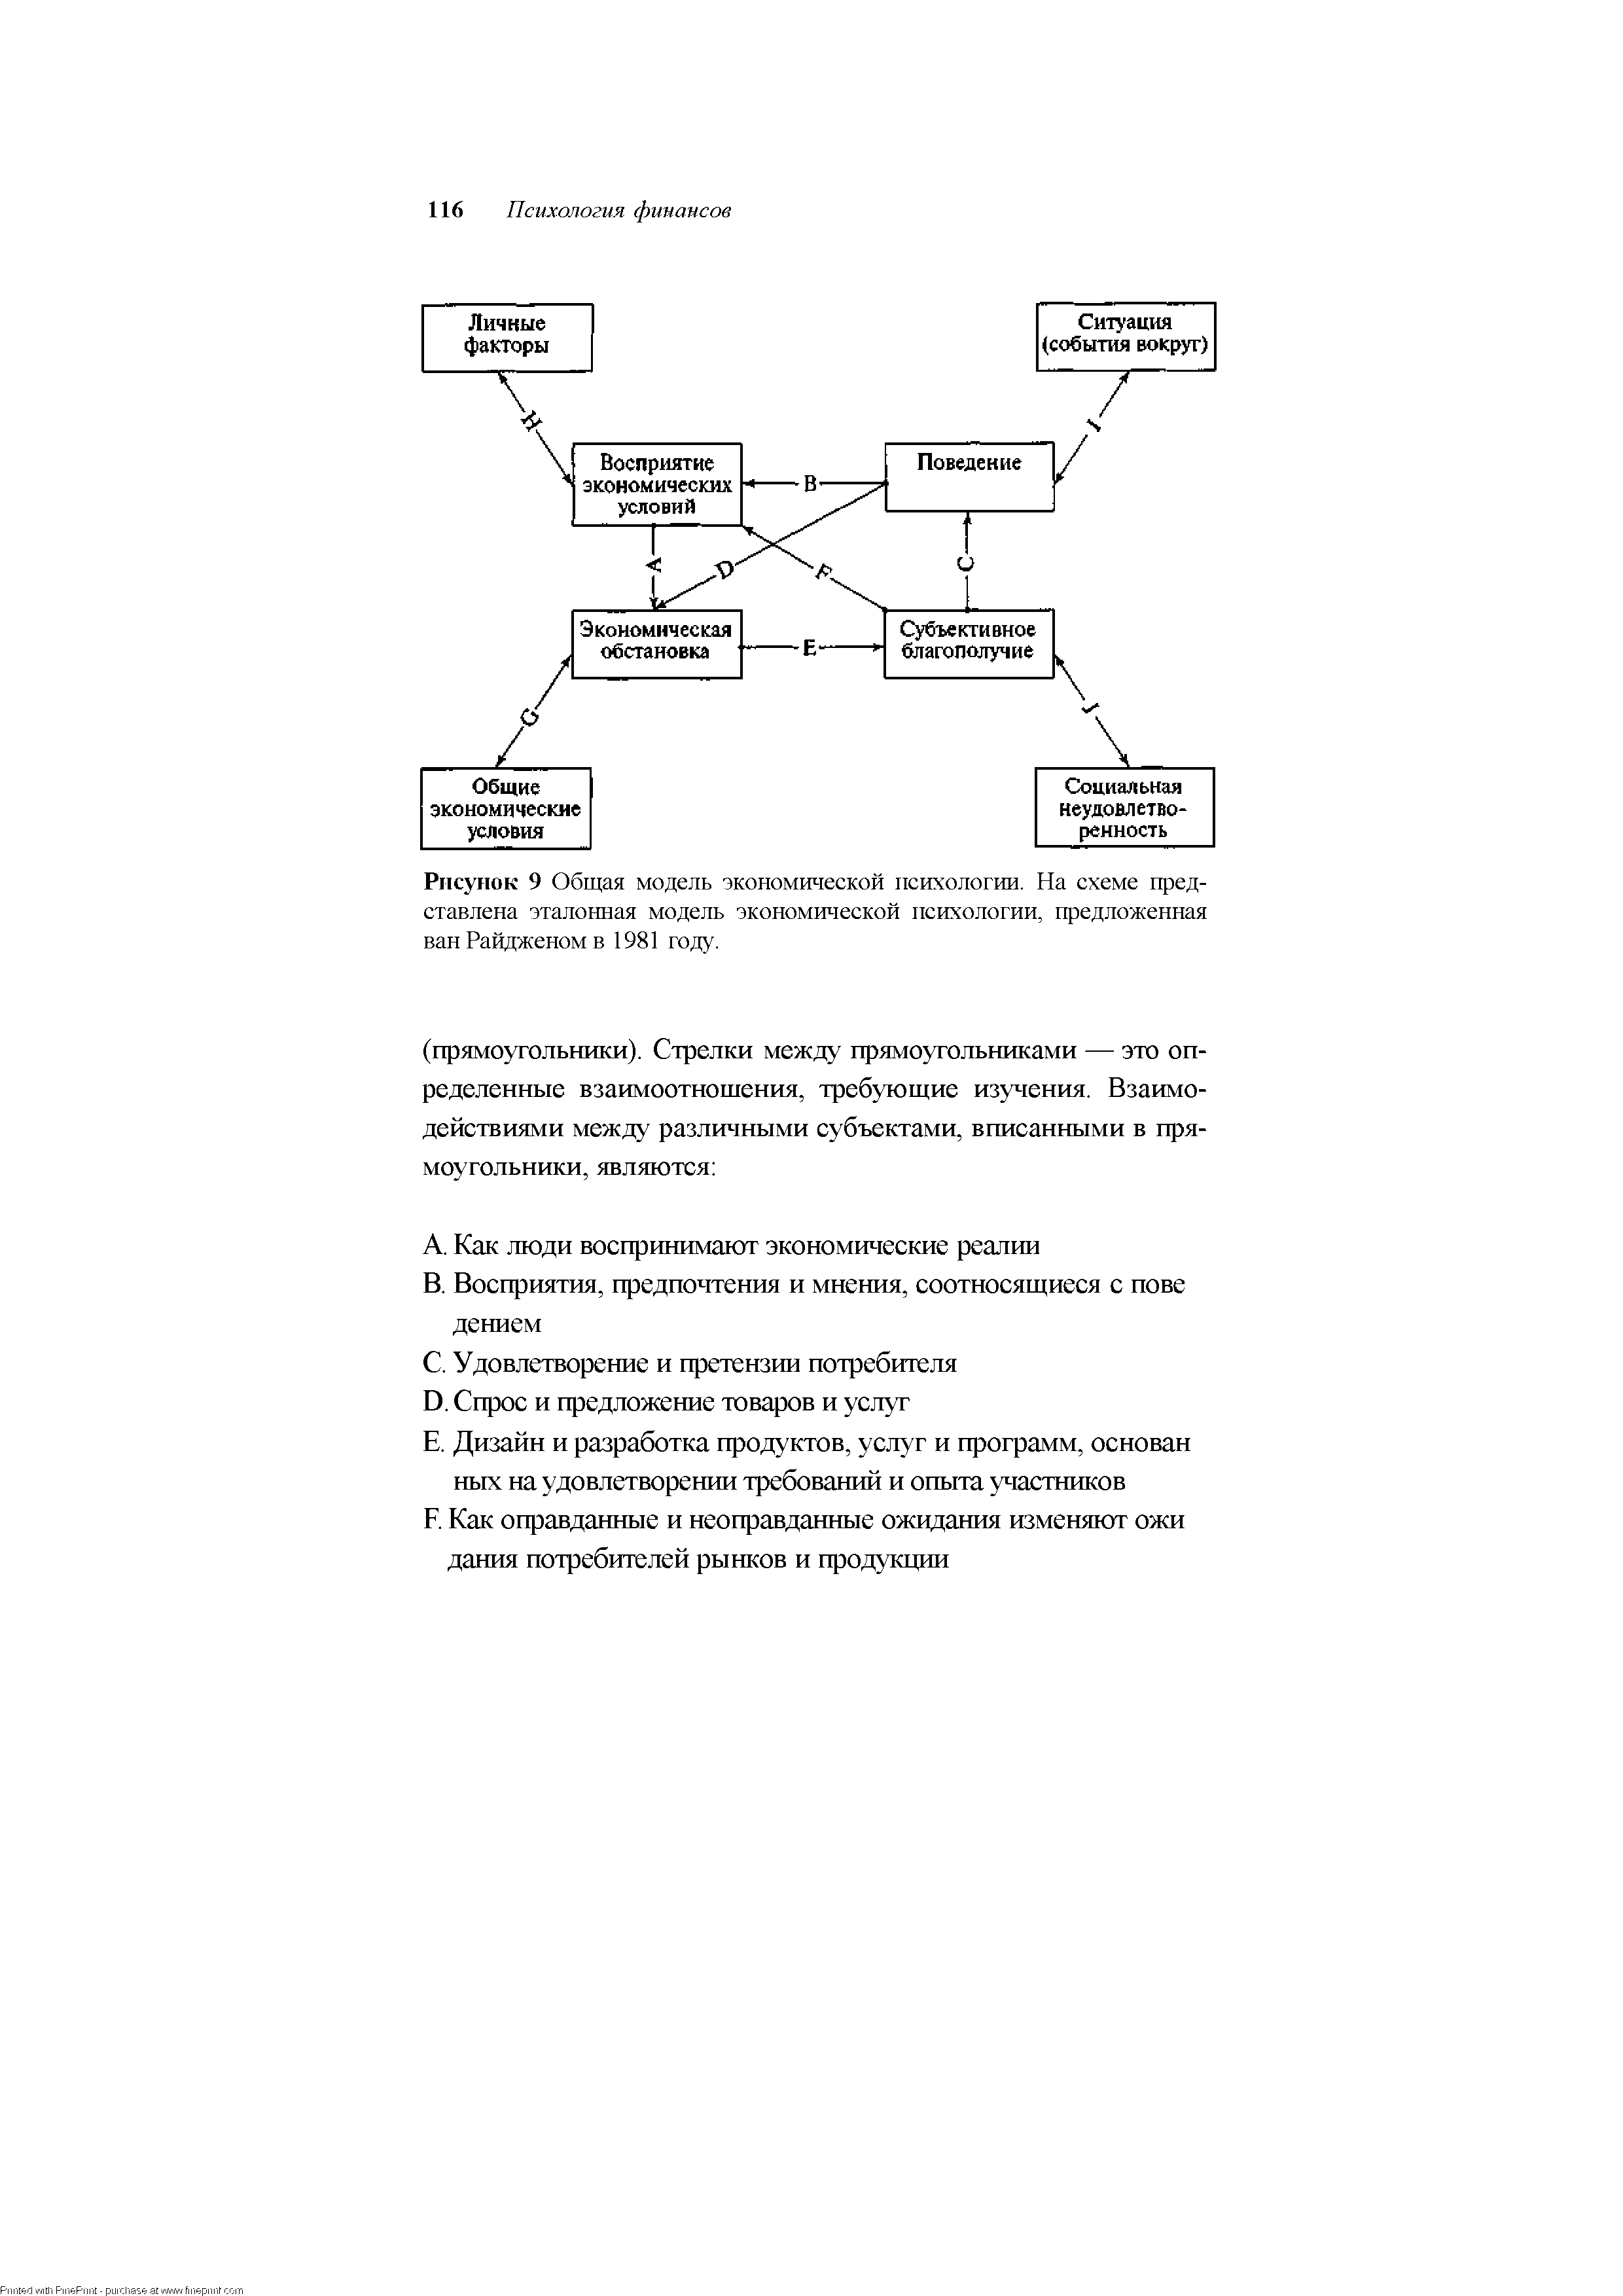 Рисунок 9 Общая модель экономической психологии. На схеме представлена эталонная <a href="/info/54065">модель экономической</a> психологии, предложенная ван Райдженом в 1981 году.
